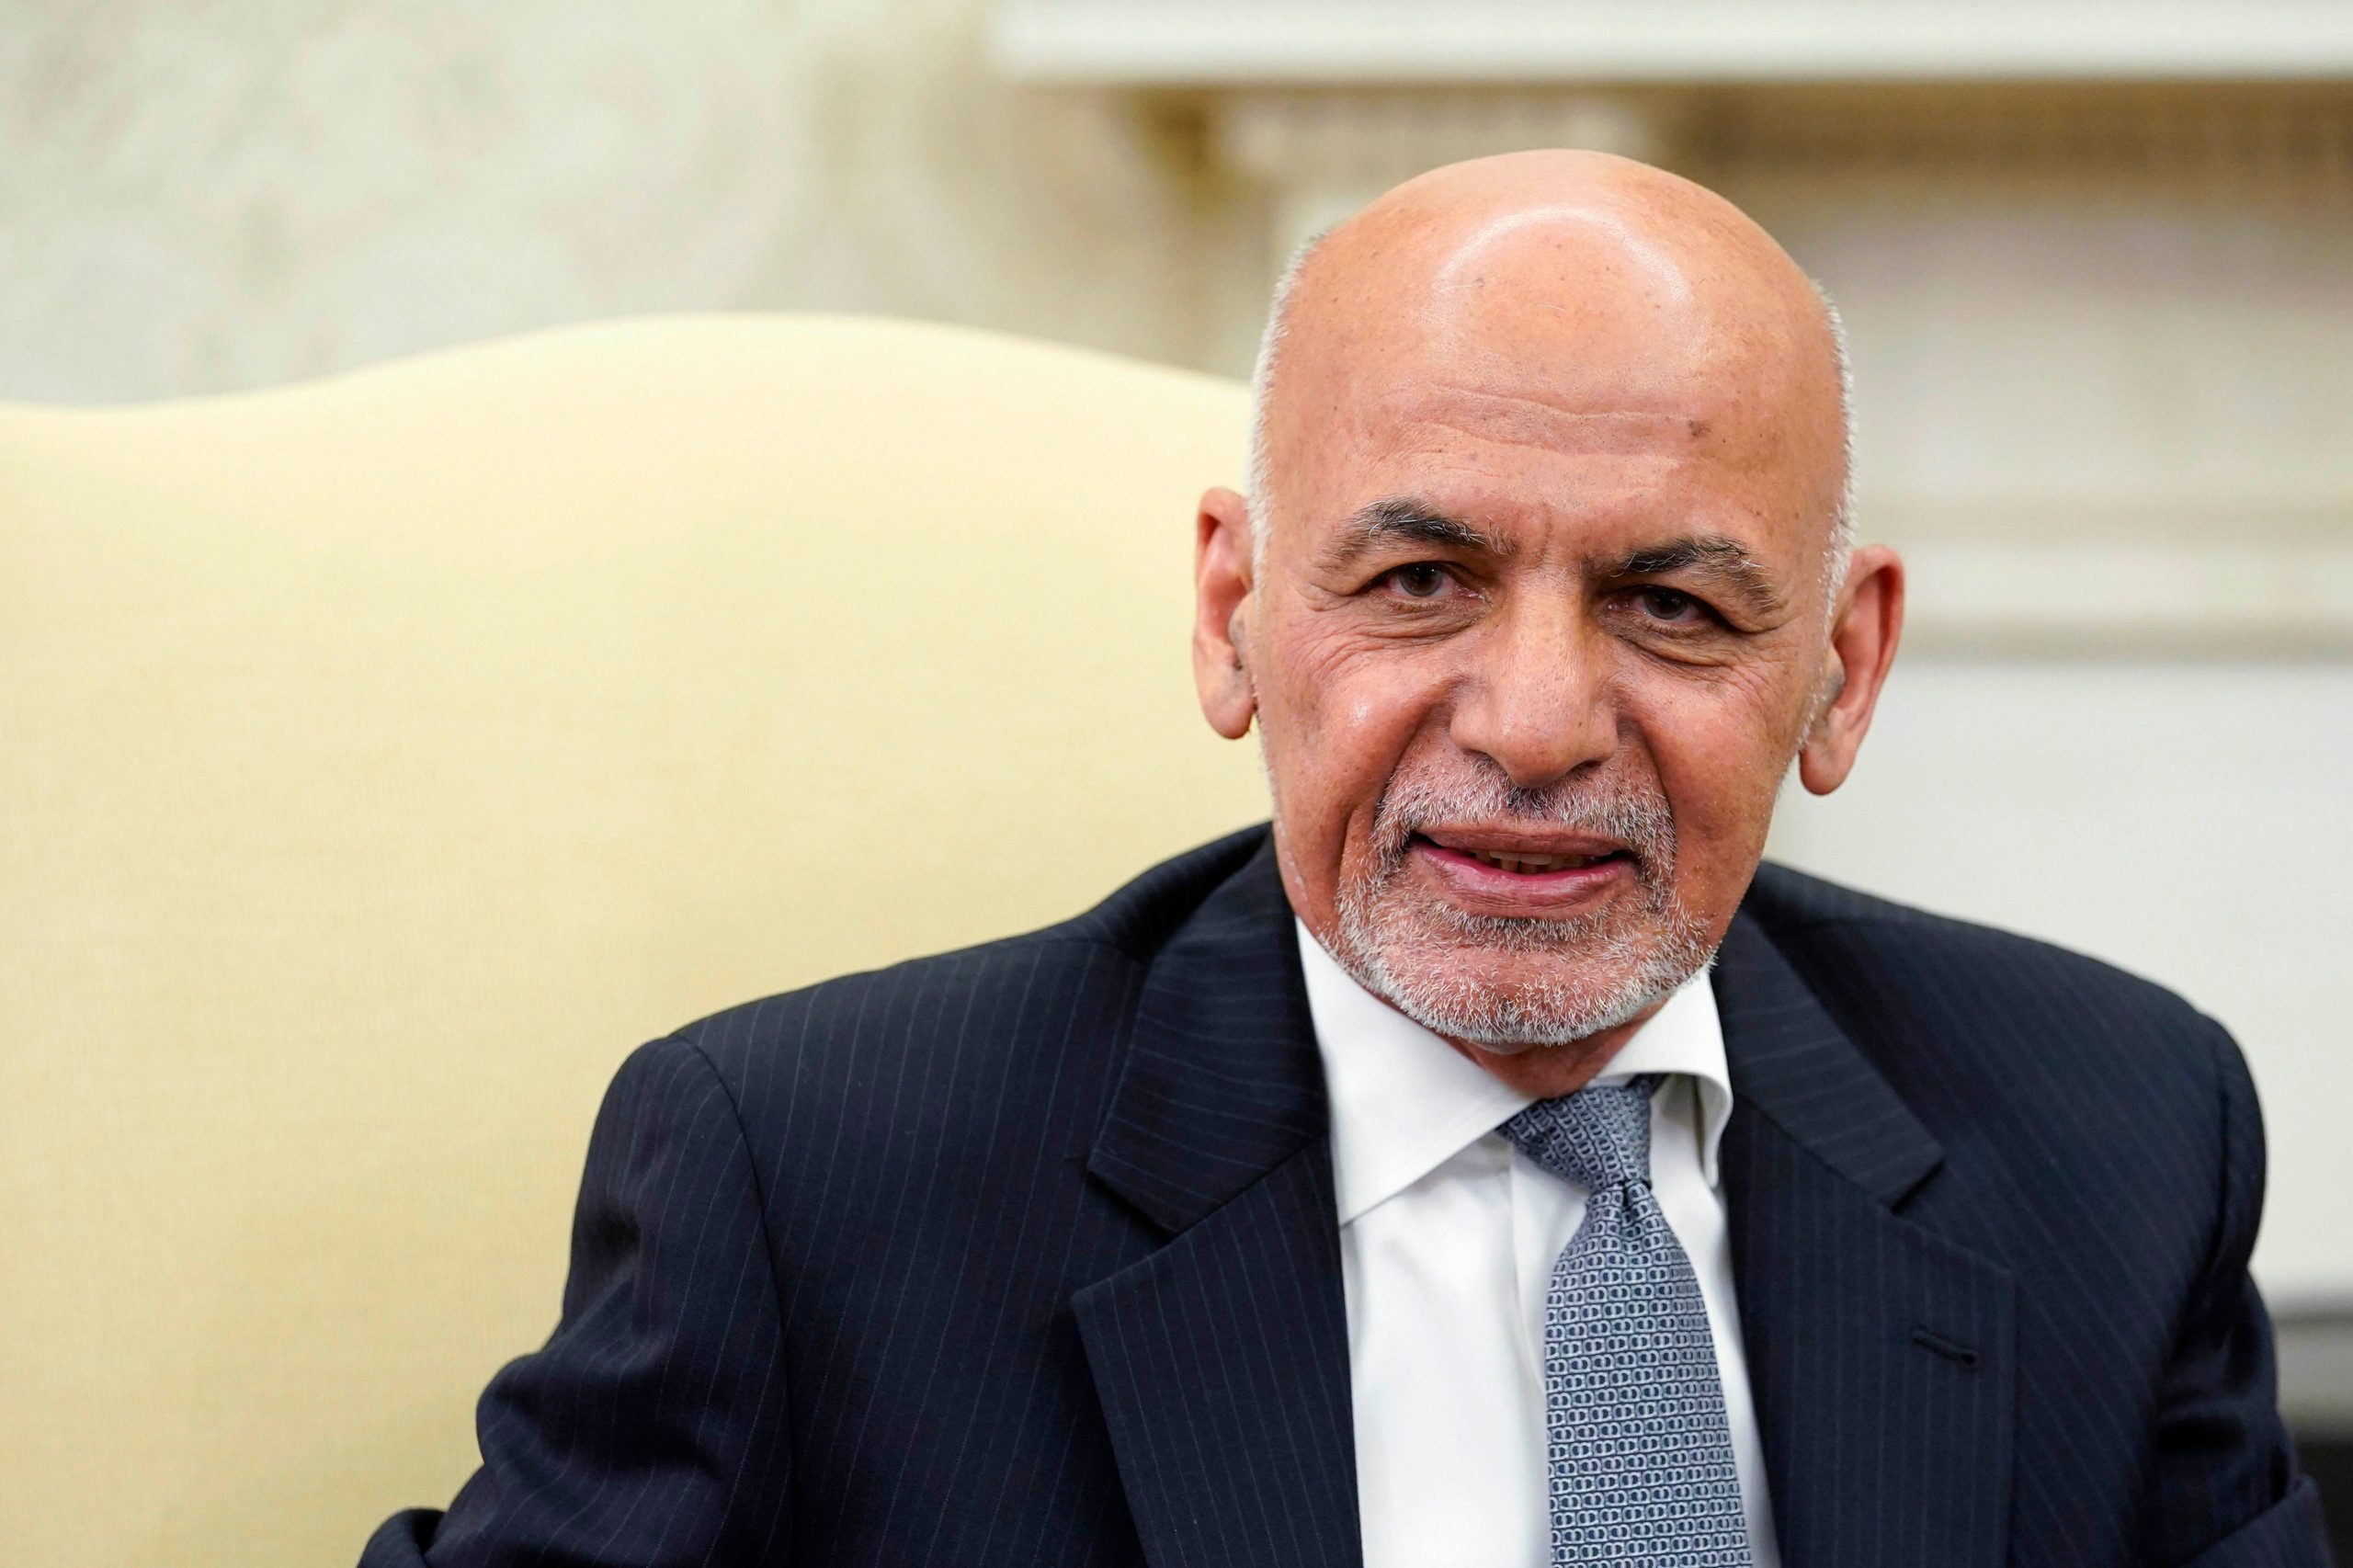 Former Afghan president Ashraf Ghani in UAE after Taliban takeover: Report